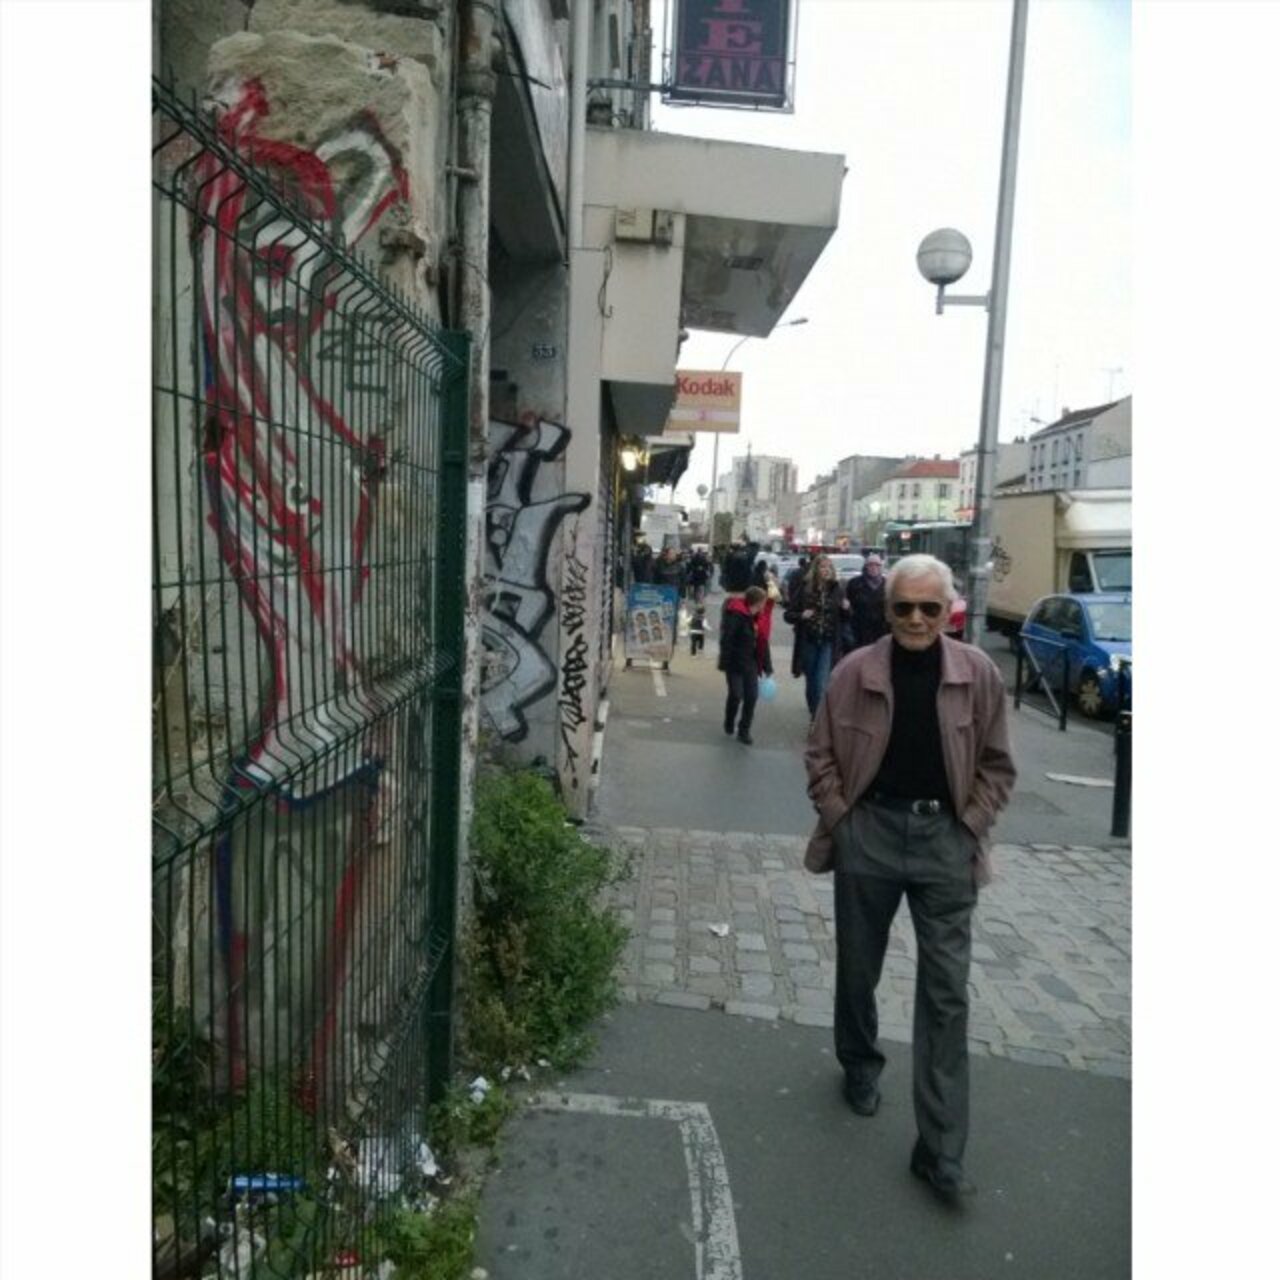 RT @circumjacent_fr: #Paris #graffiti photo by @zecarrion http://ift.tt/206uFuG #StreetArt https://t.co/iLLVJhAsVT